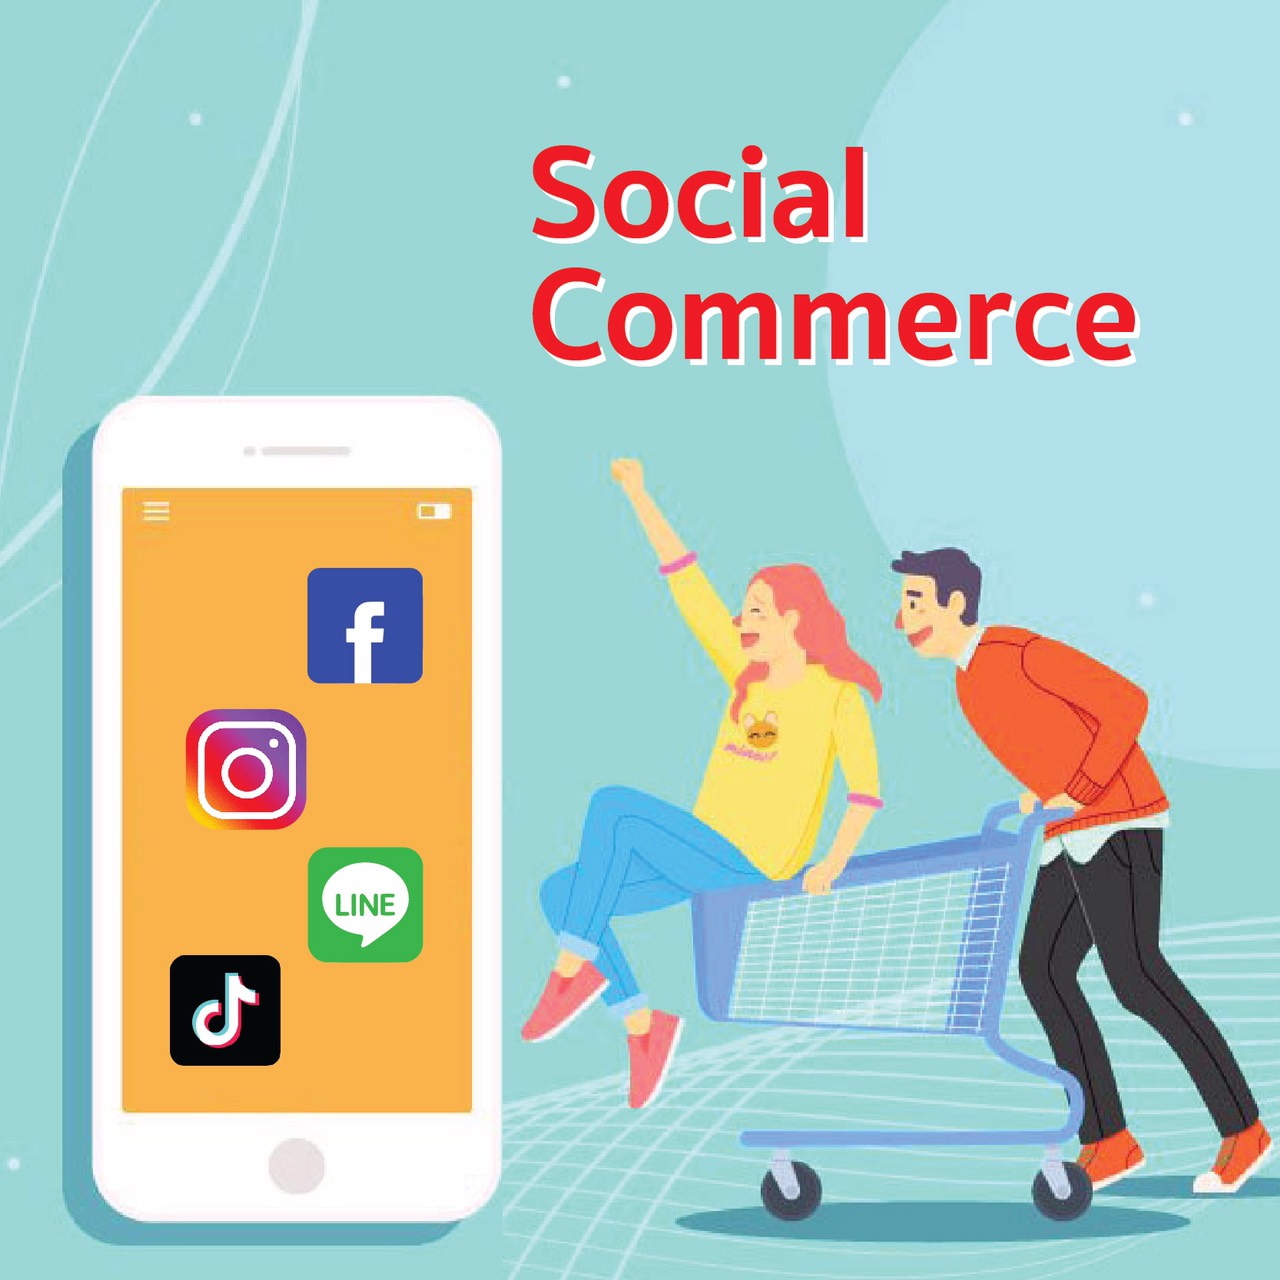 Social Commerce คืออะไร